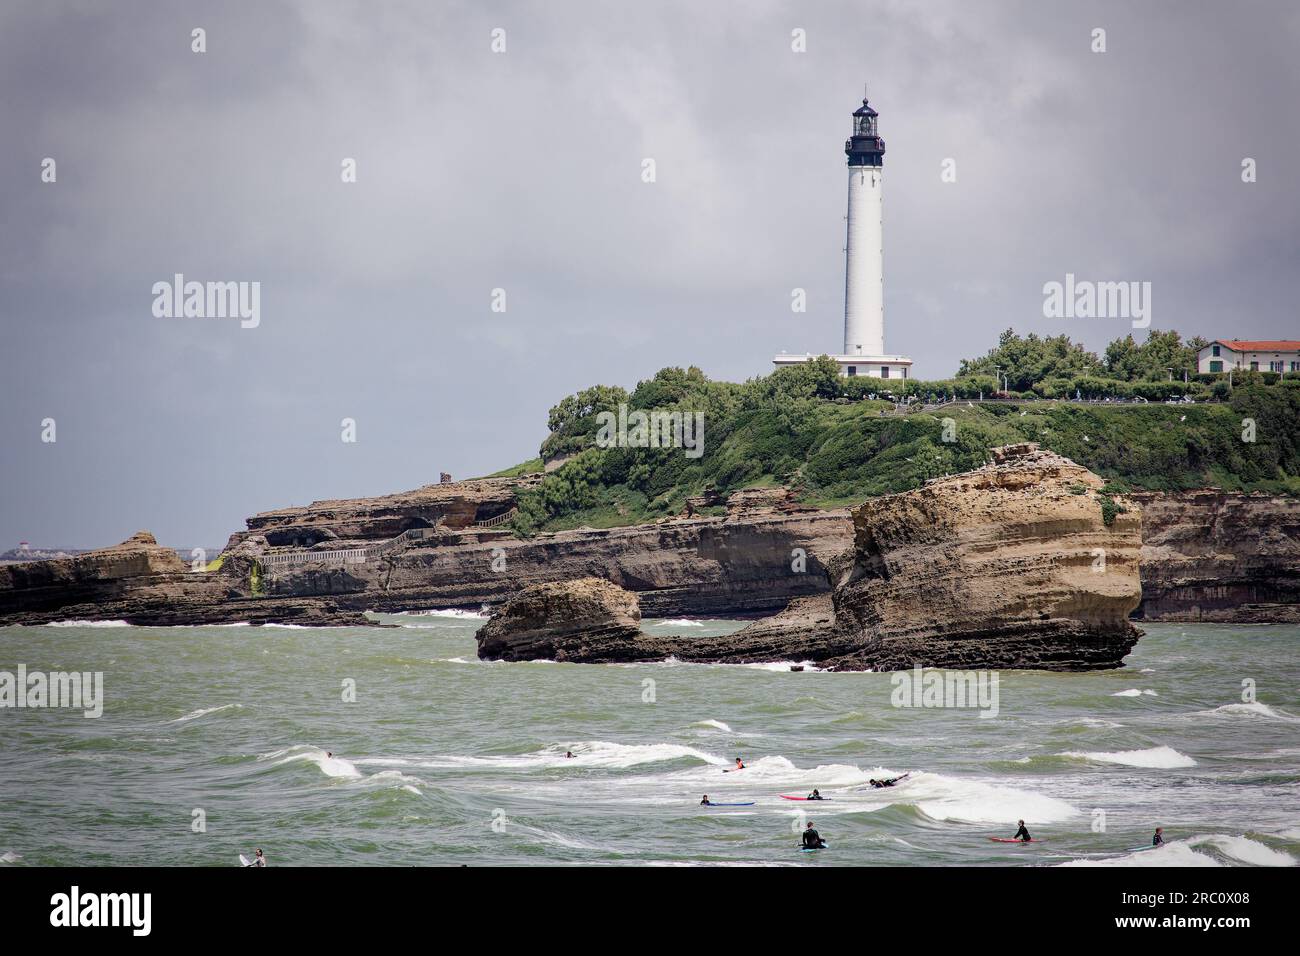 Personnes surfant devant le phare de Biarritz, France. Banque D'Images